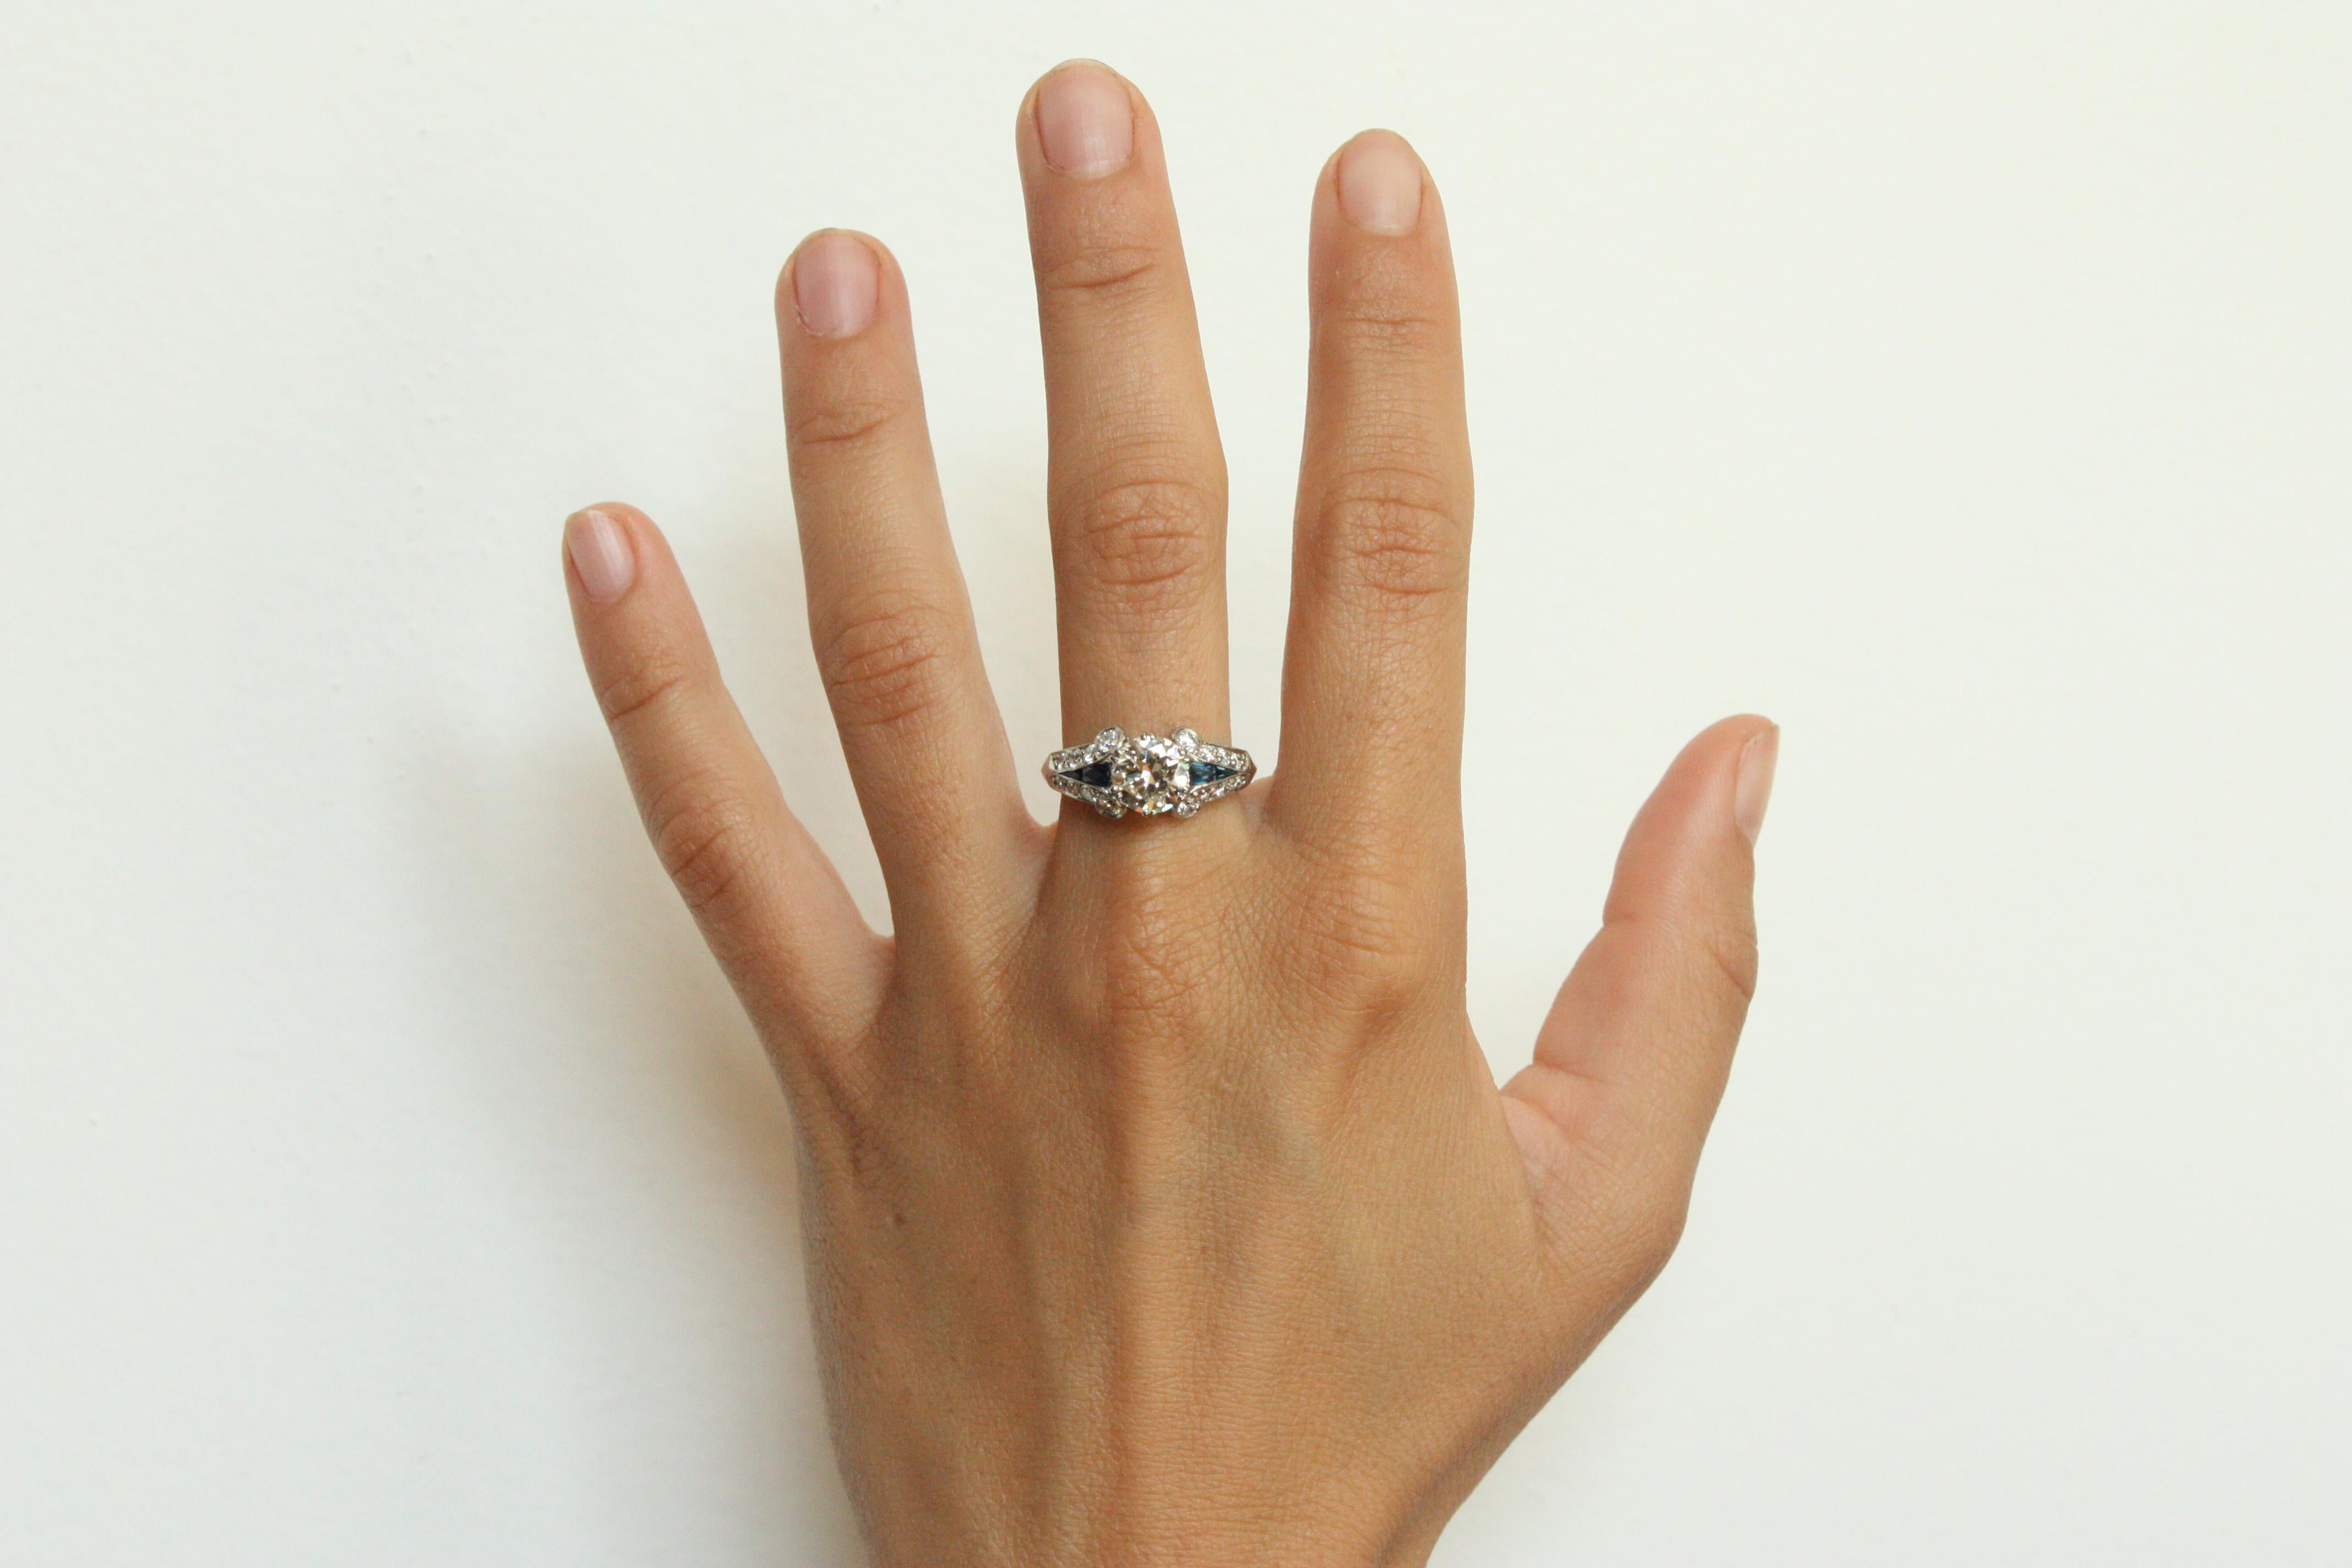 Diamant-Verlobungsring im Art-déco-Stil, hergestellt von Bracken Jewelers in Venice, Kalifornien. Mit einem runden Brillanten von 1,14 Karat in der Mitte (Reinheit VVS-2, Farbe L-M) und 16 seitlichen Diamanten (Reinheit VS-1, Farbe G) von insgesamt